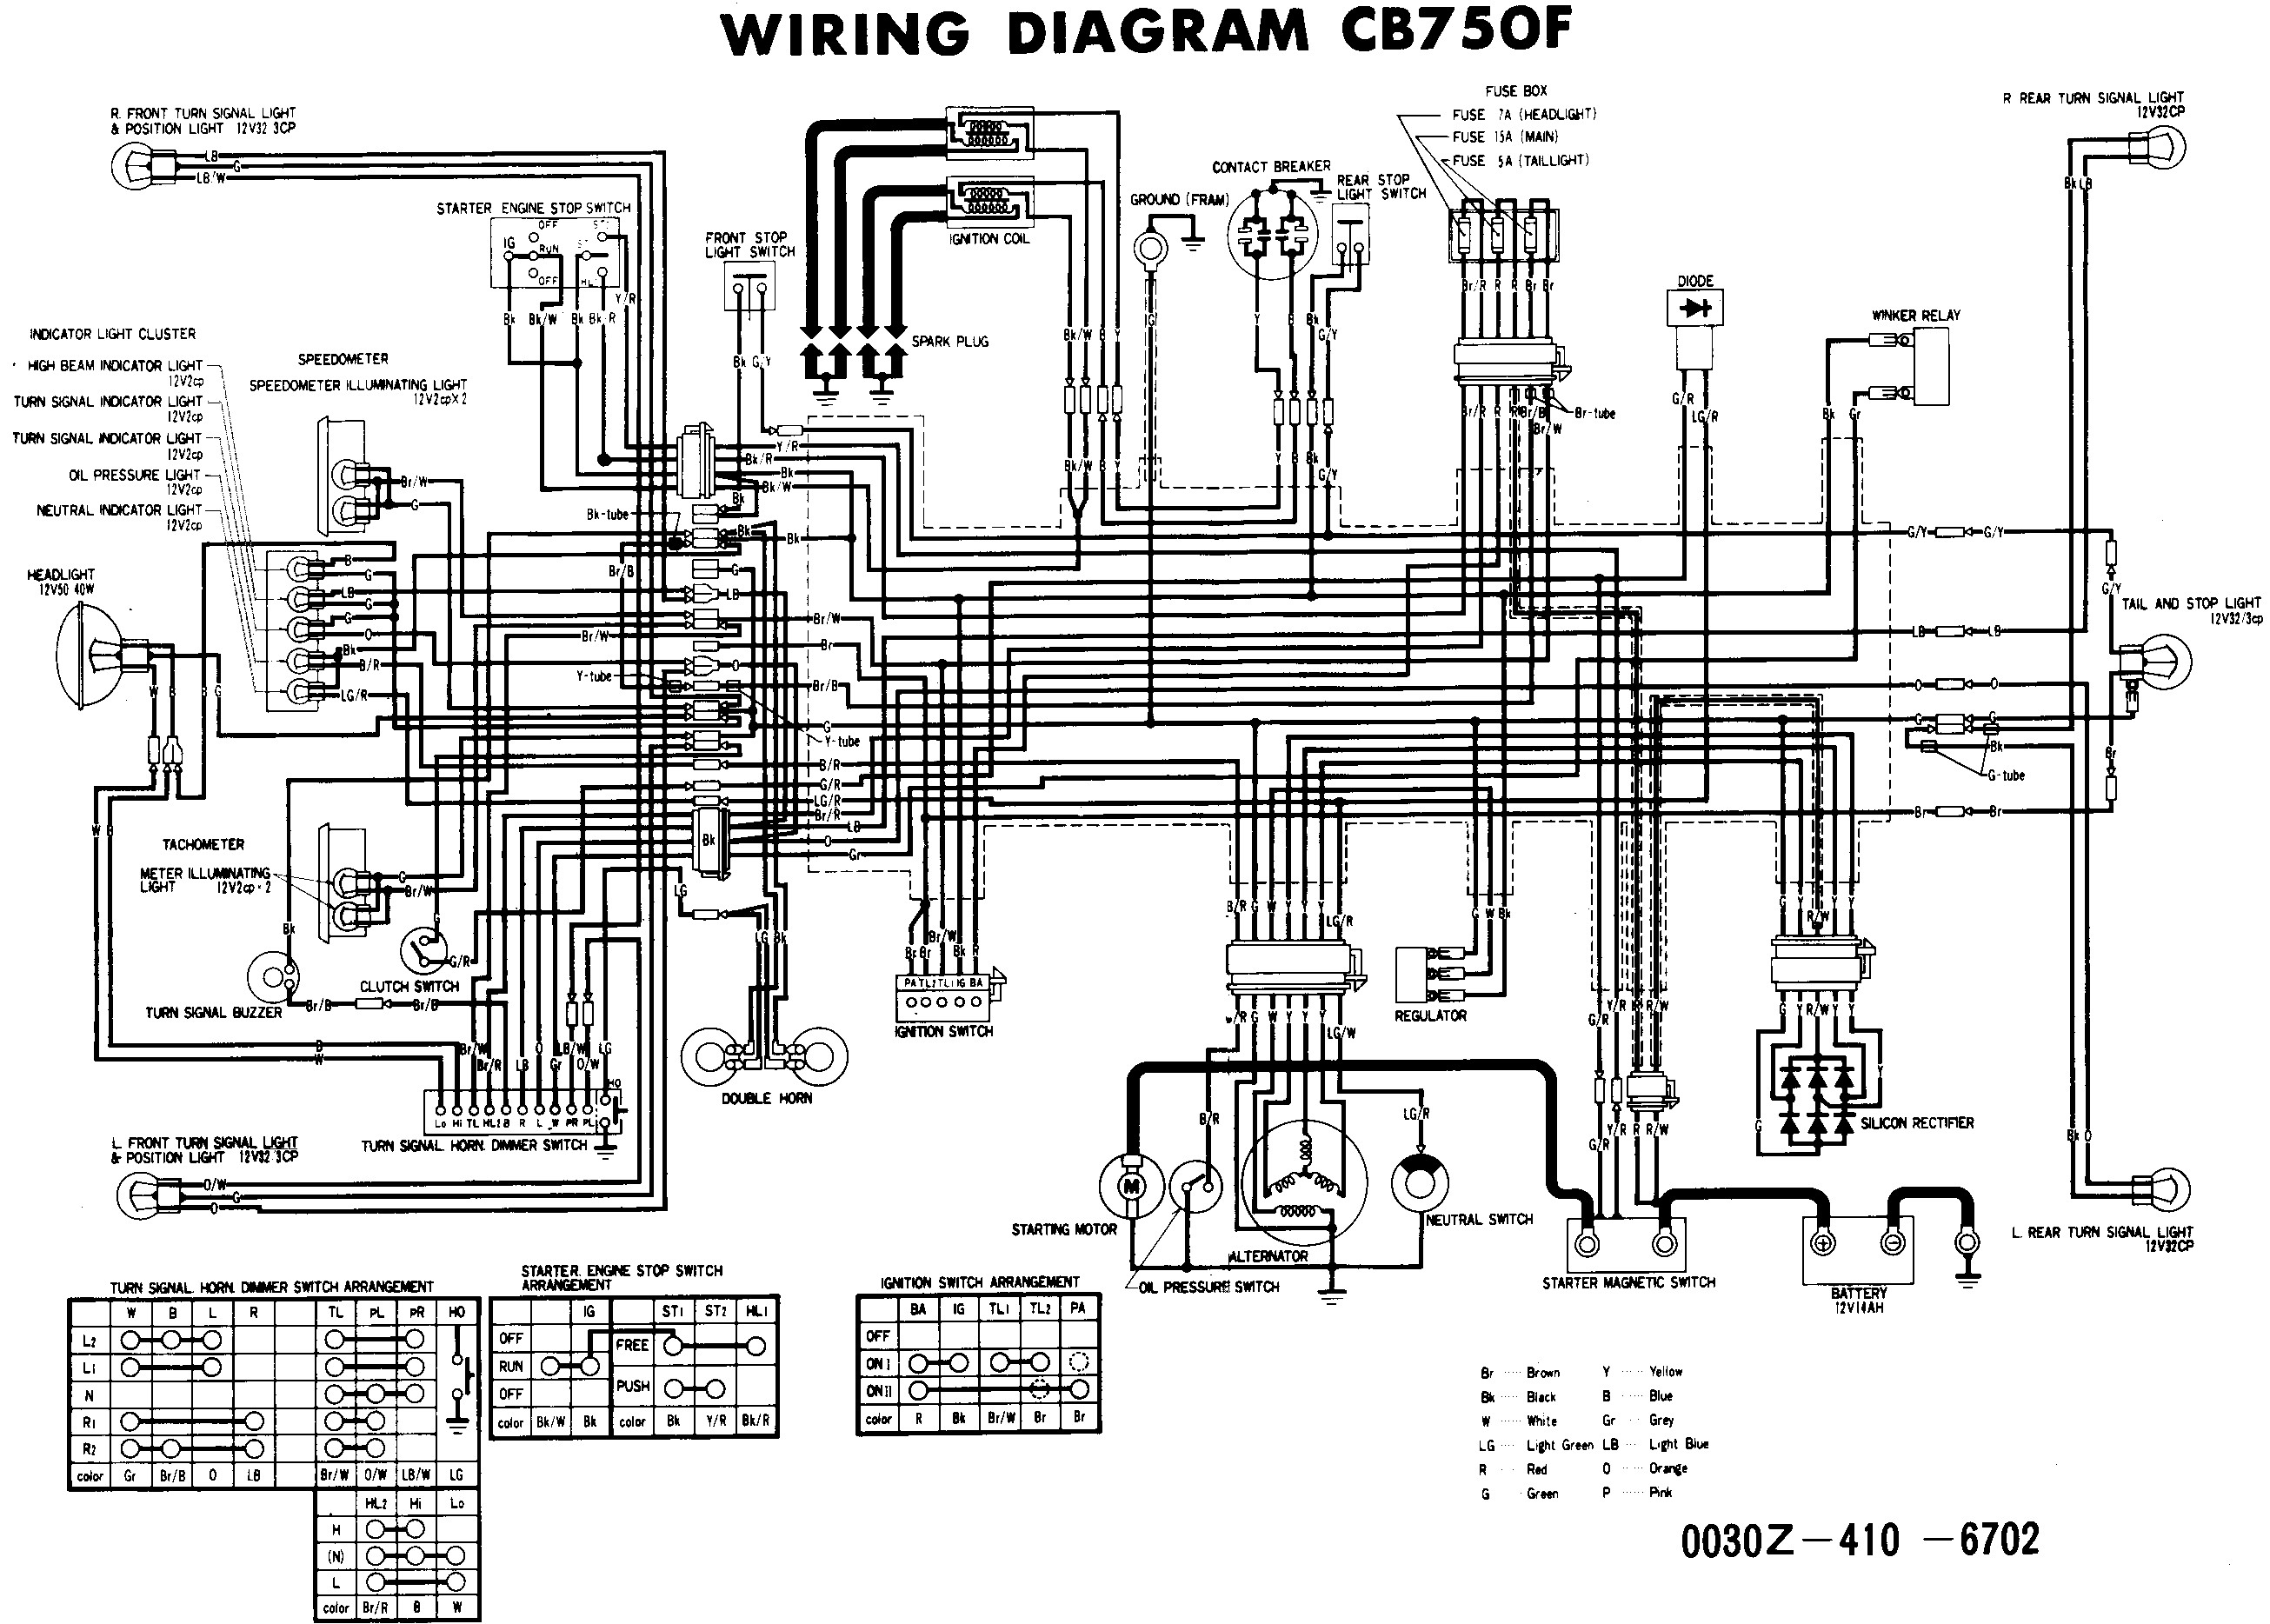 shadow wiring diagram r2d2